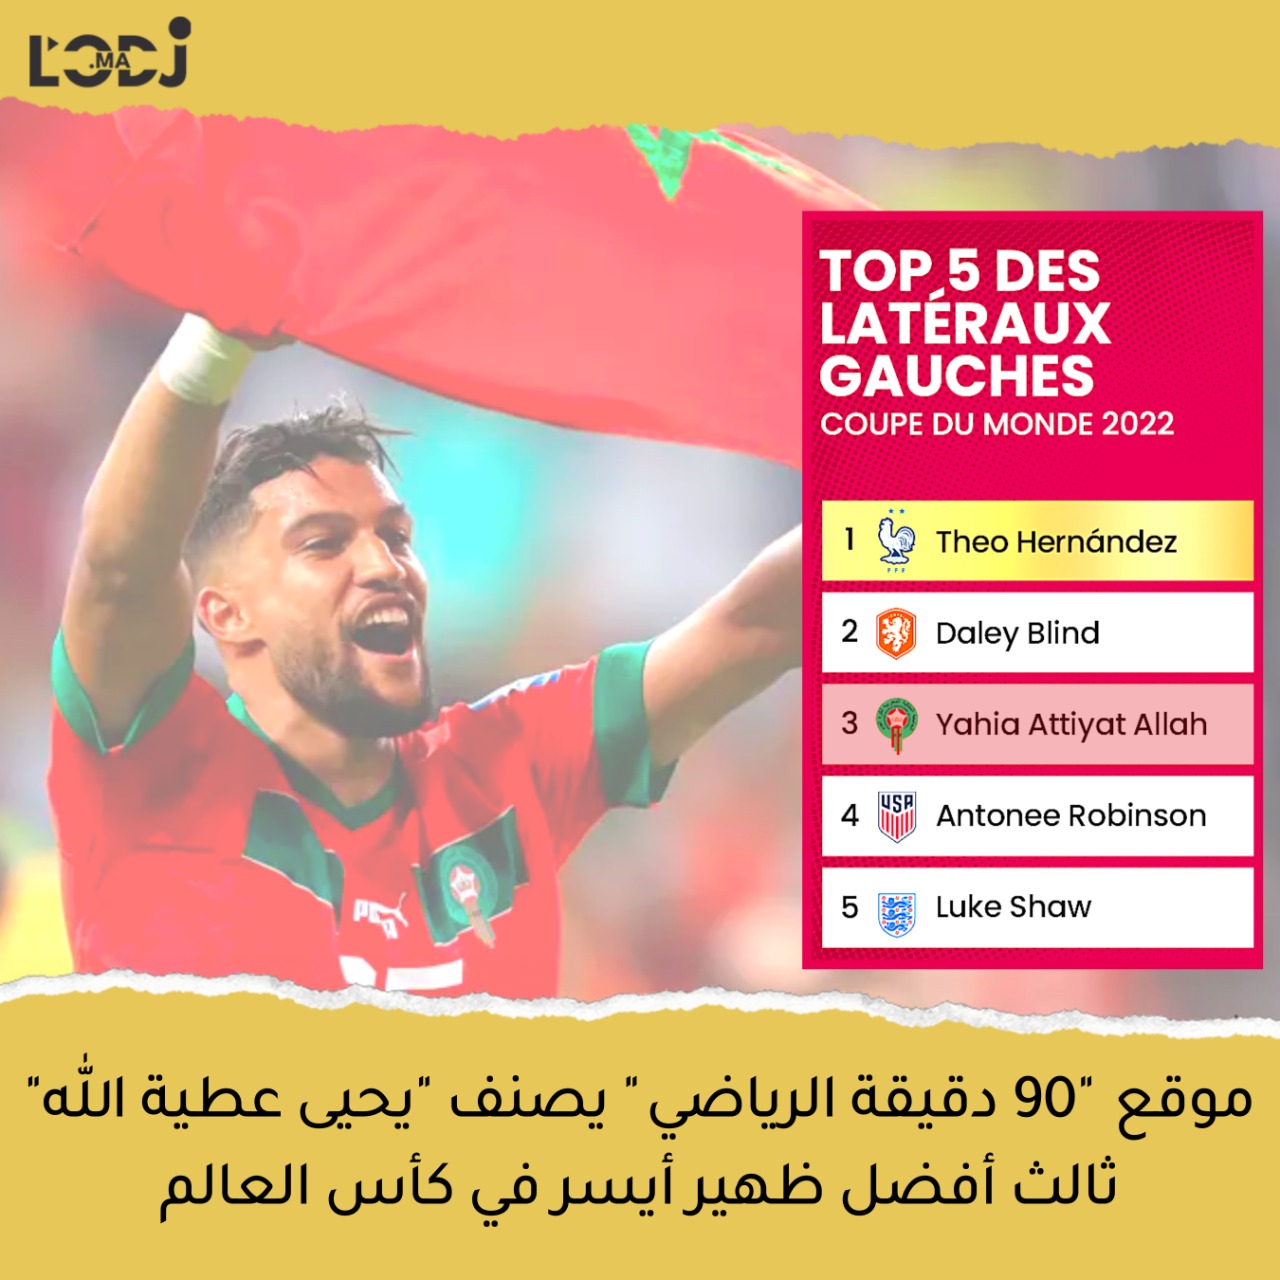 موقع "90 دقيقة" الرياضي يصنف لاعب المنتخب الوطني المغربي  "يحيى عطية الله" ثالث أفضل ظهير أيسر في كأس العالم 2022